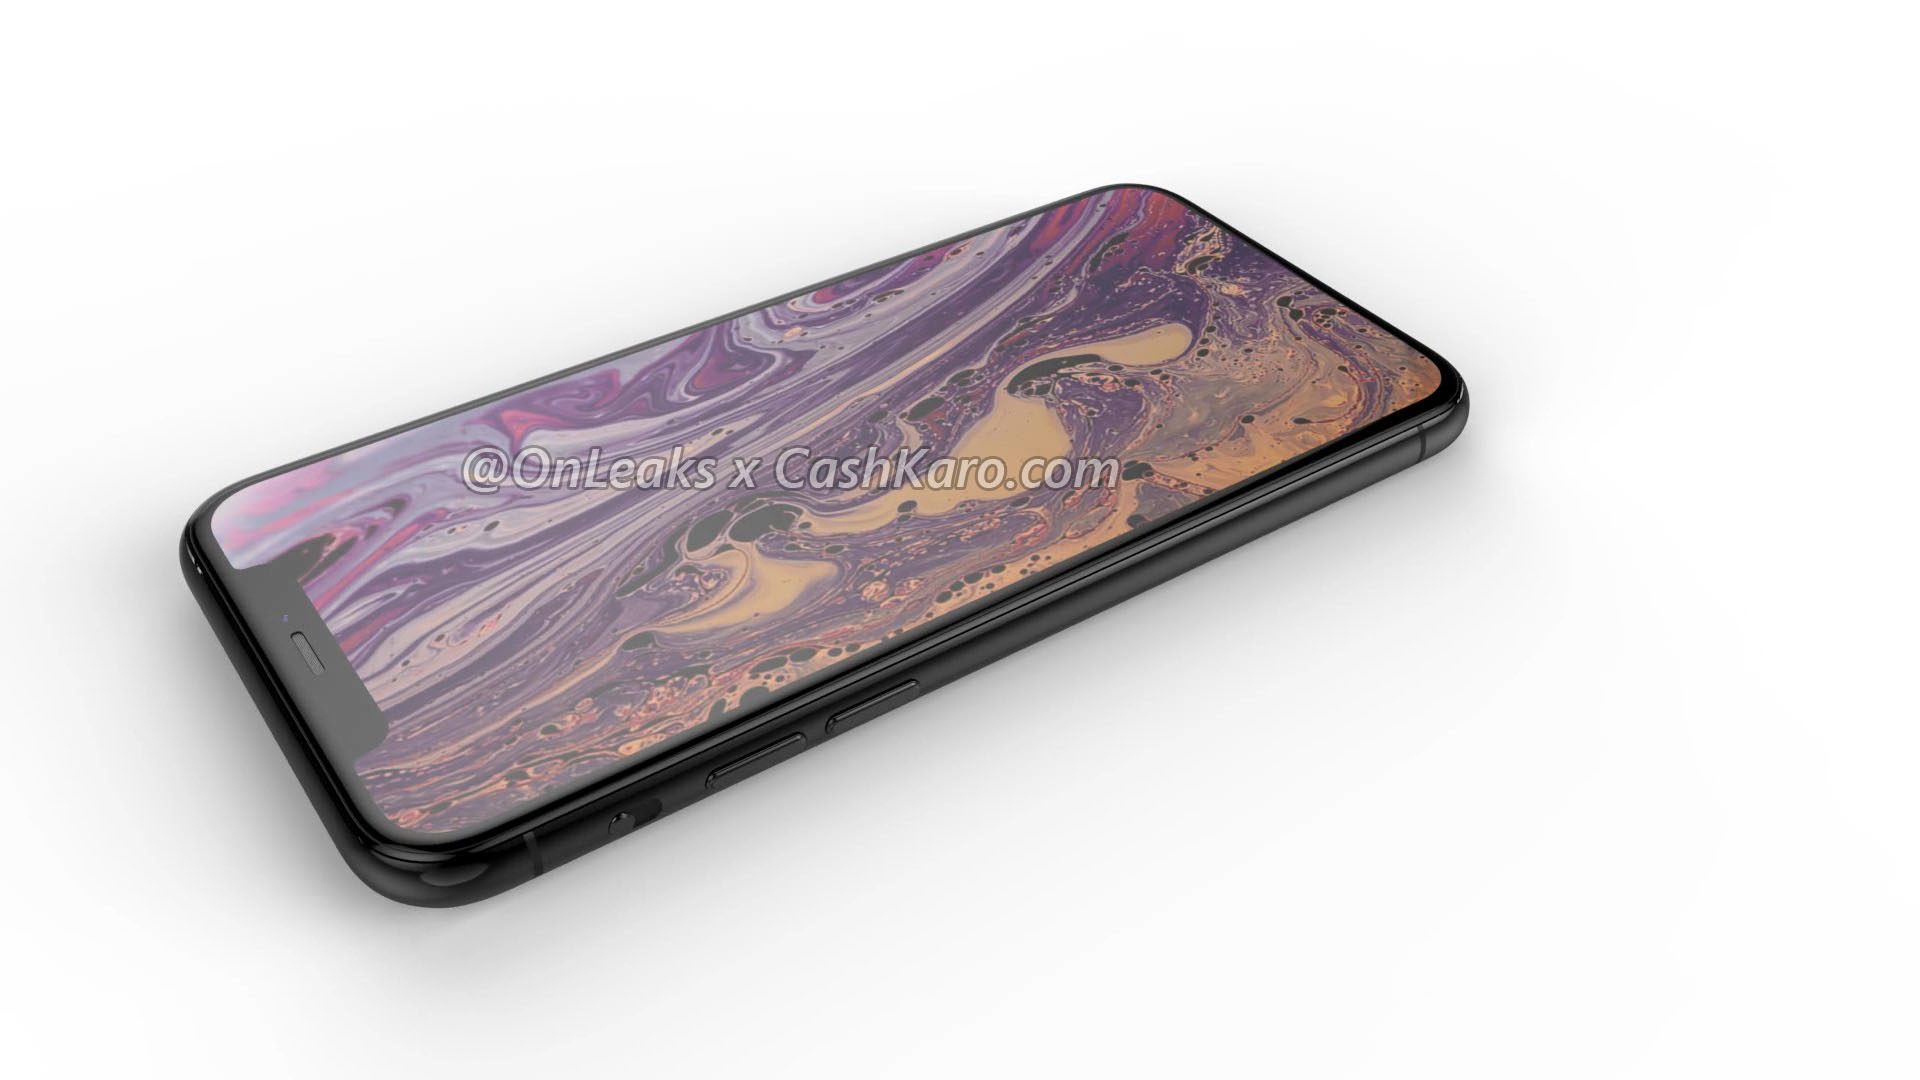 Render de suposto iPhone de 2019 por OnLeaks